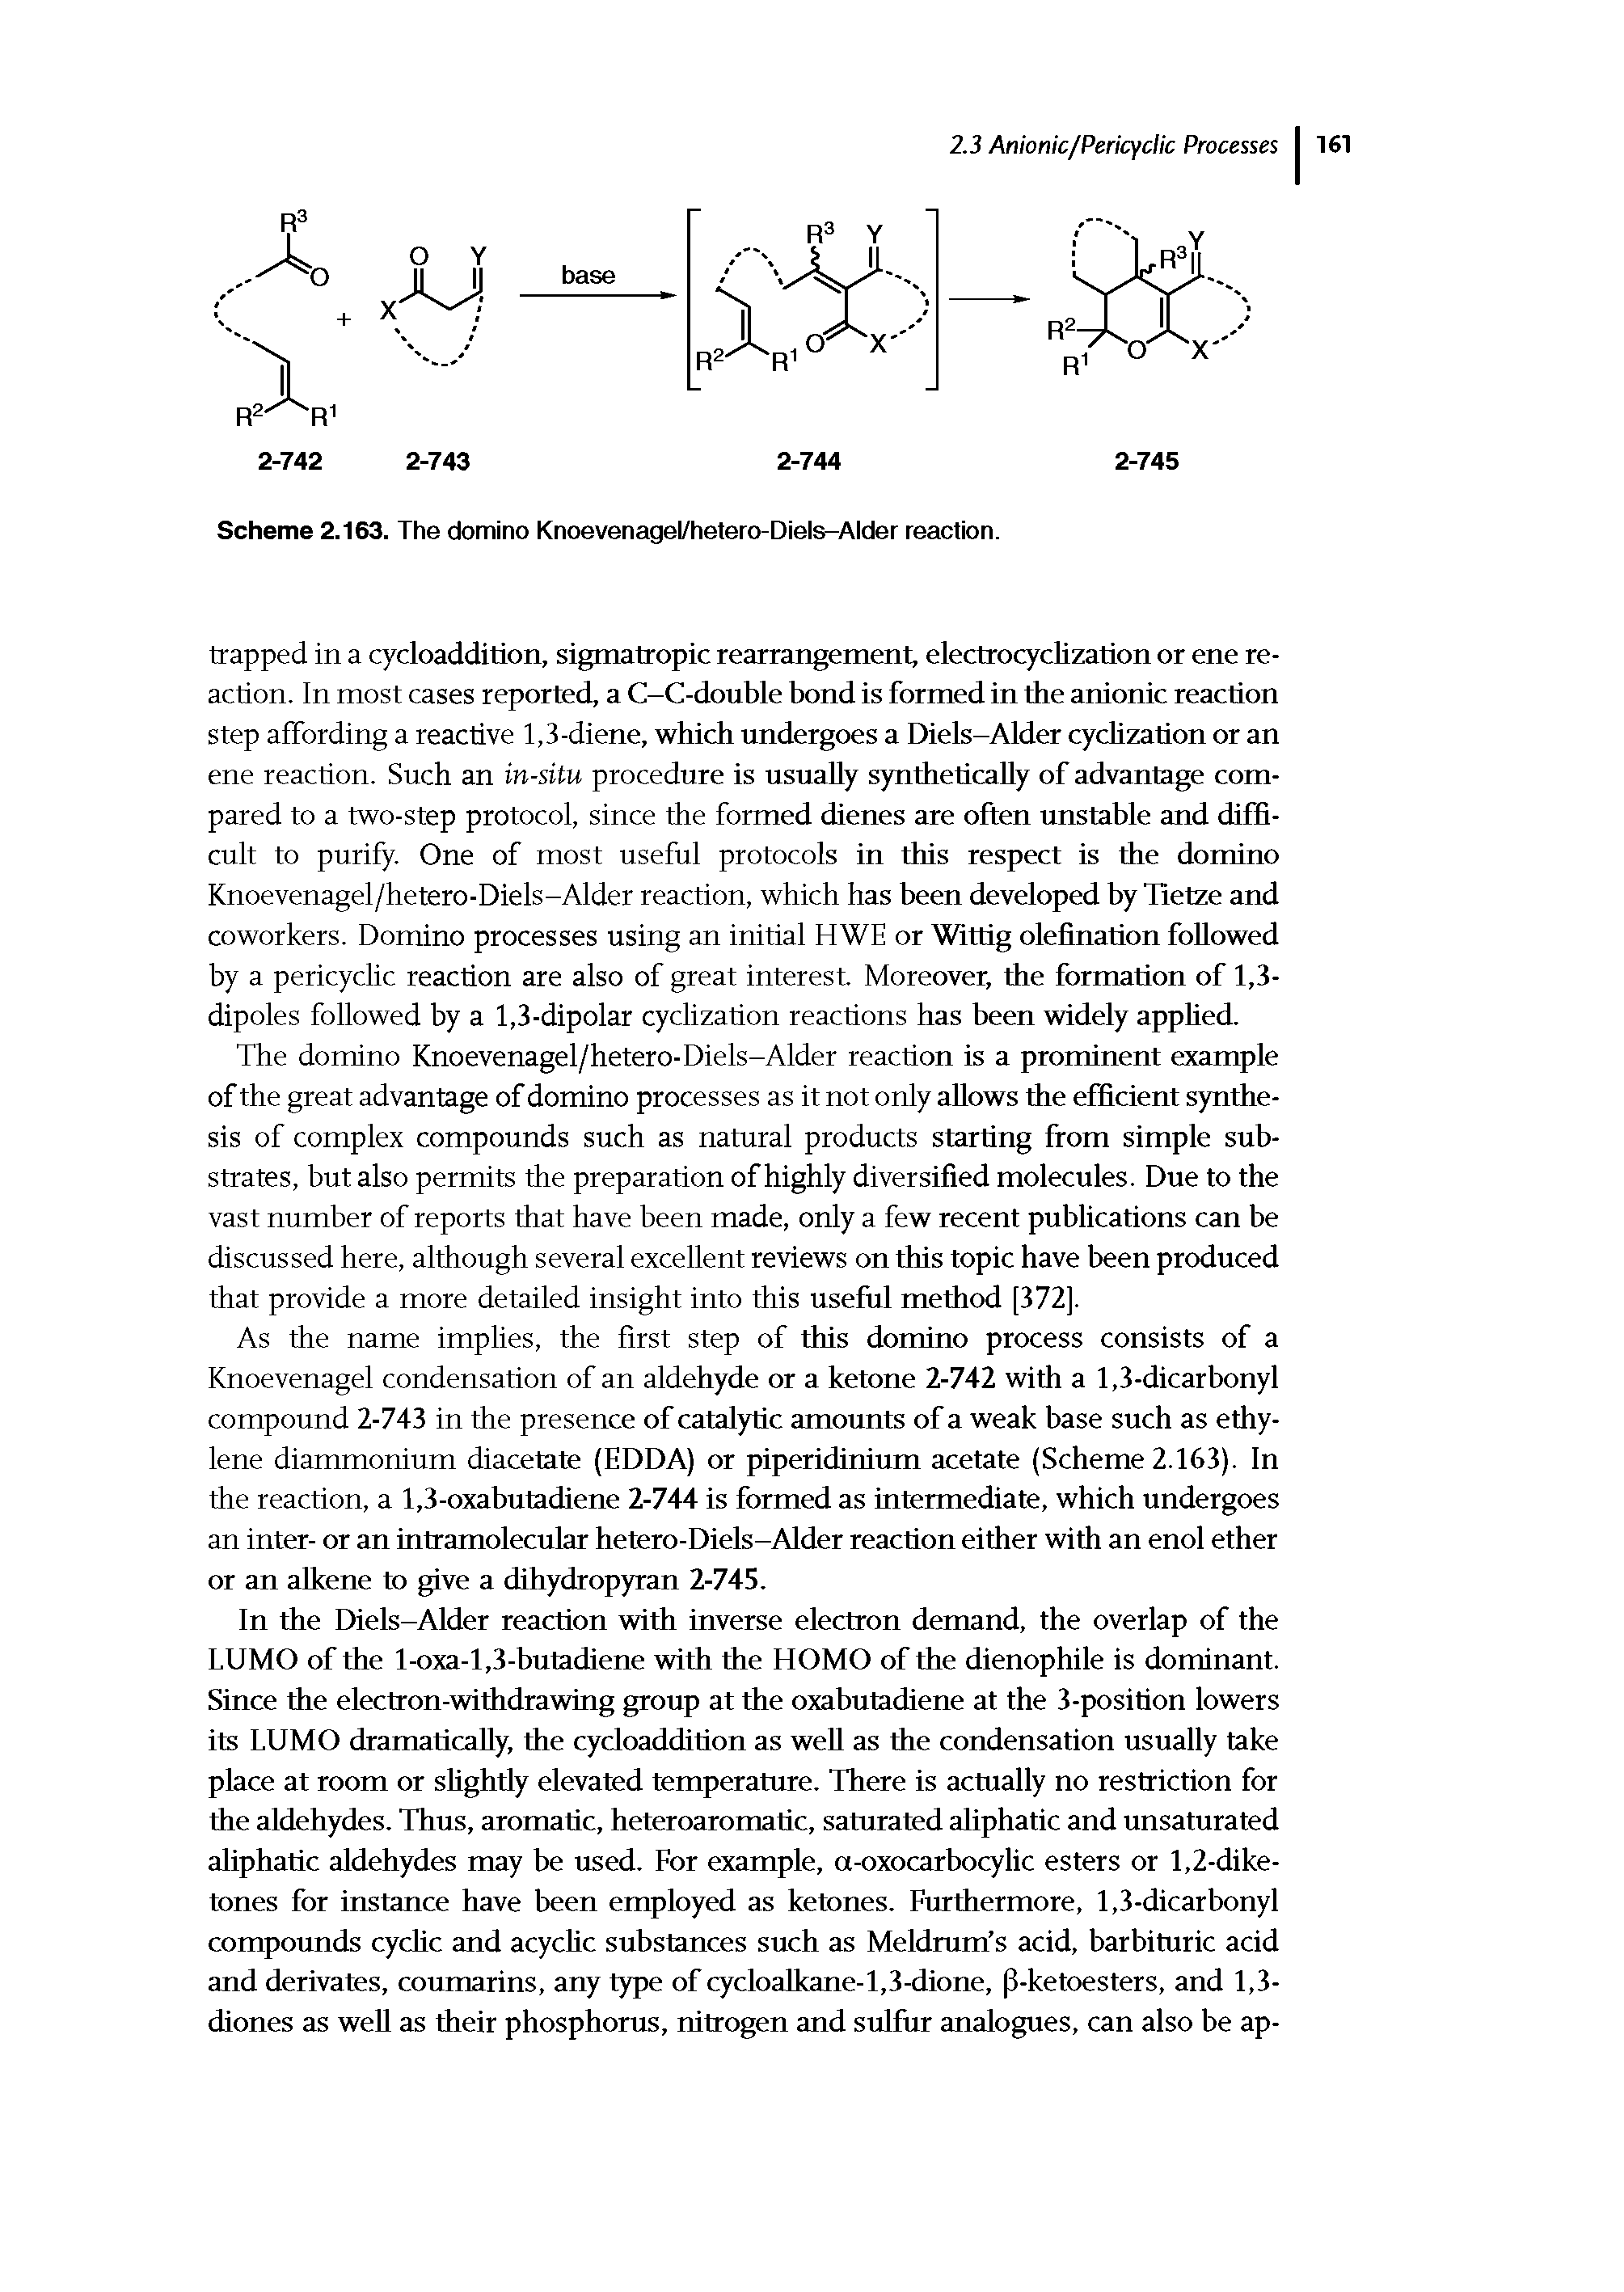 Scheme 2.163. The domino Knoevenagel/hetero-Diels-Alder reaction.